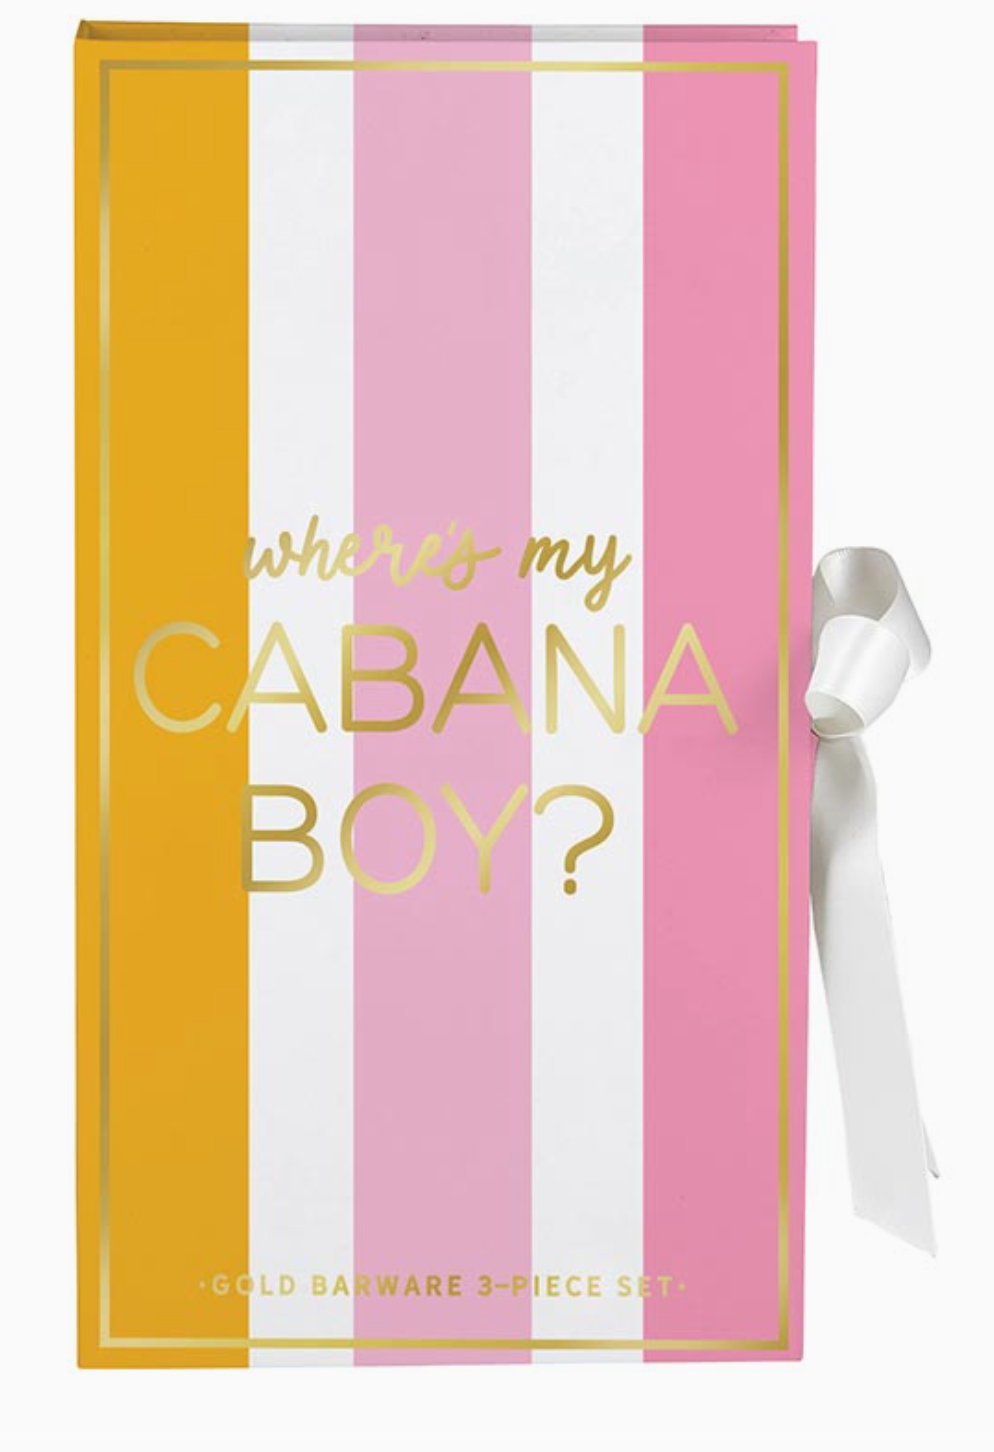 Where's my Cabana Boy? Bar Tool Box